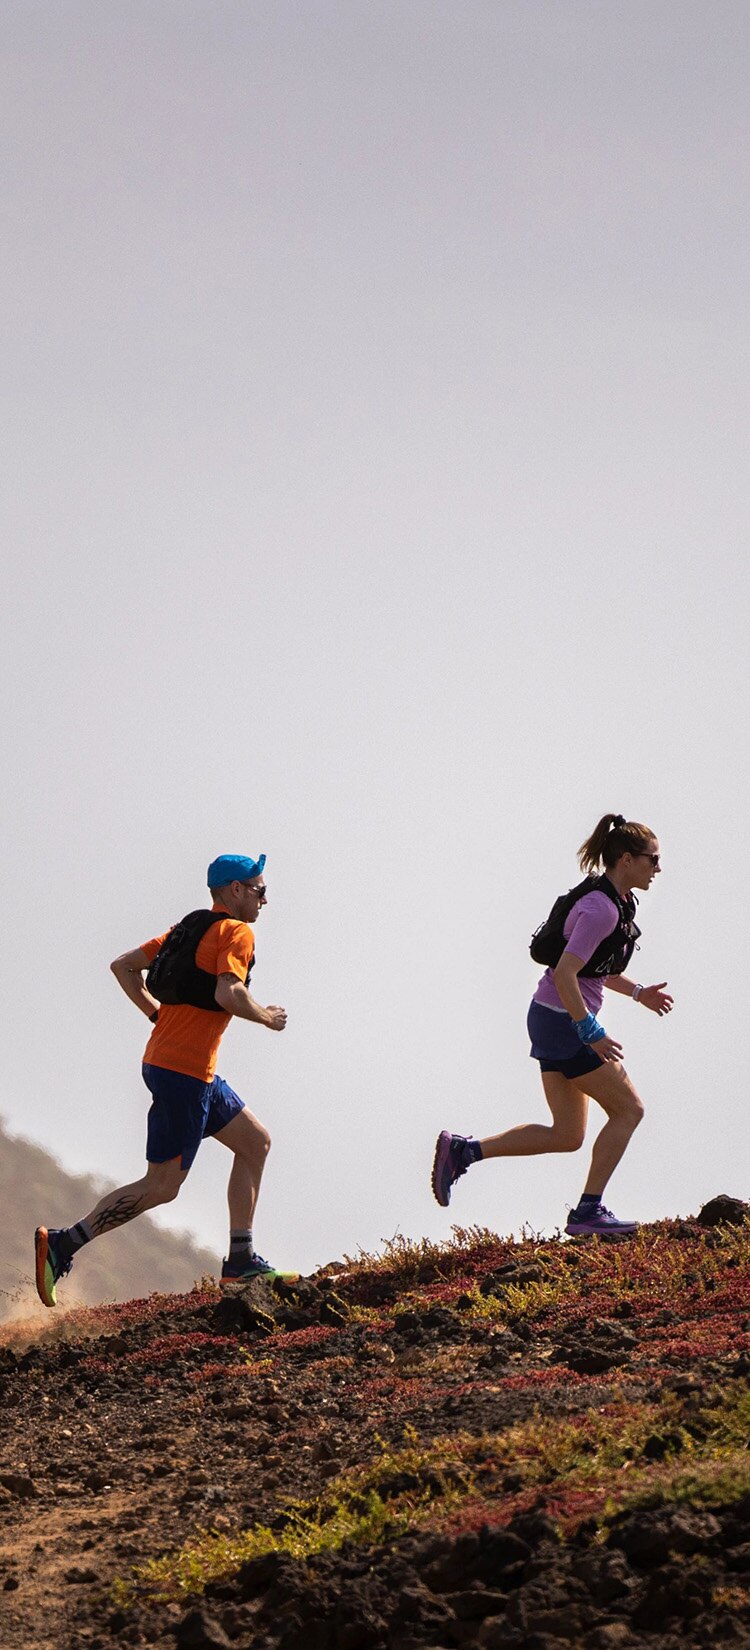 Deux runners Brooks courant sur une colline rocheuse